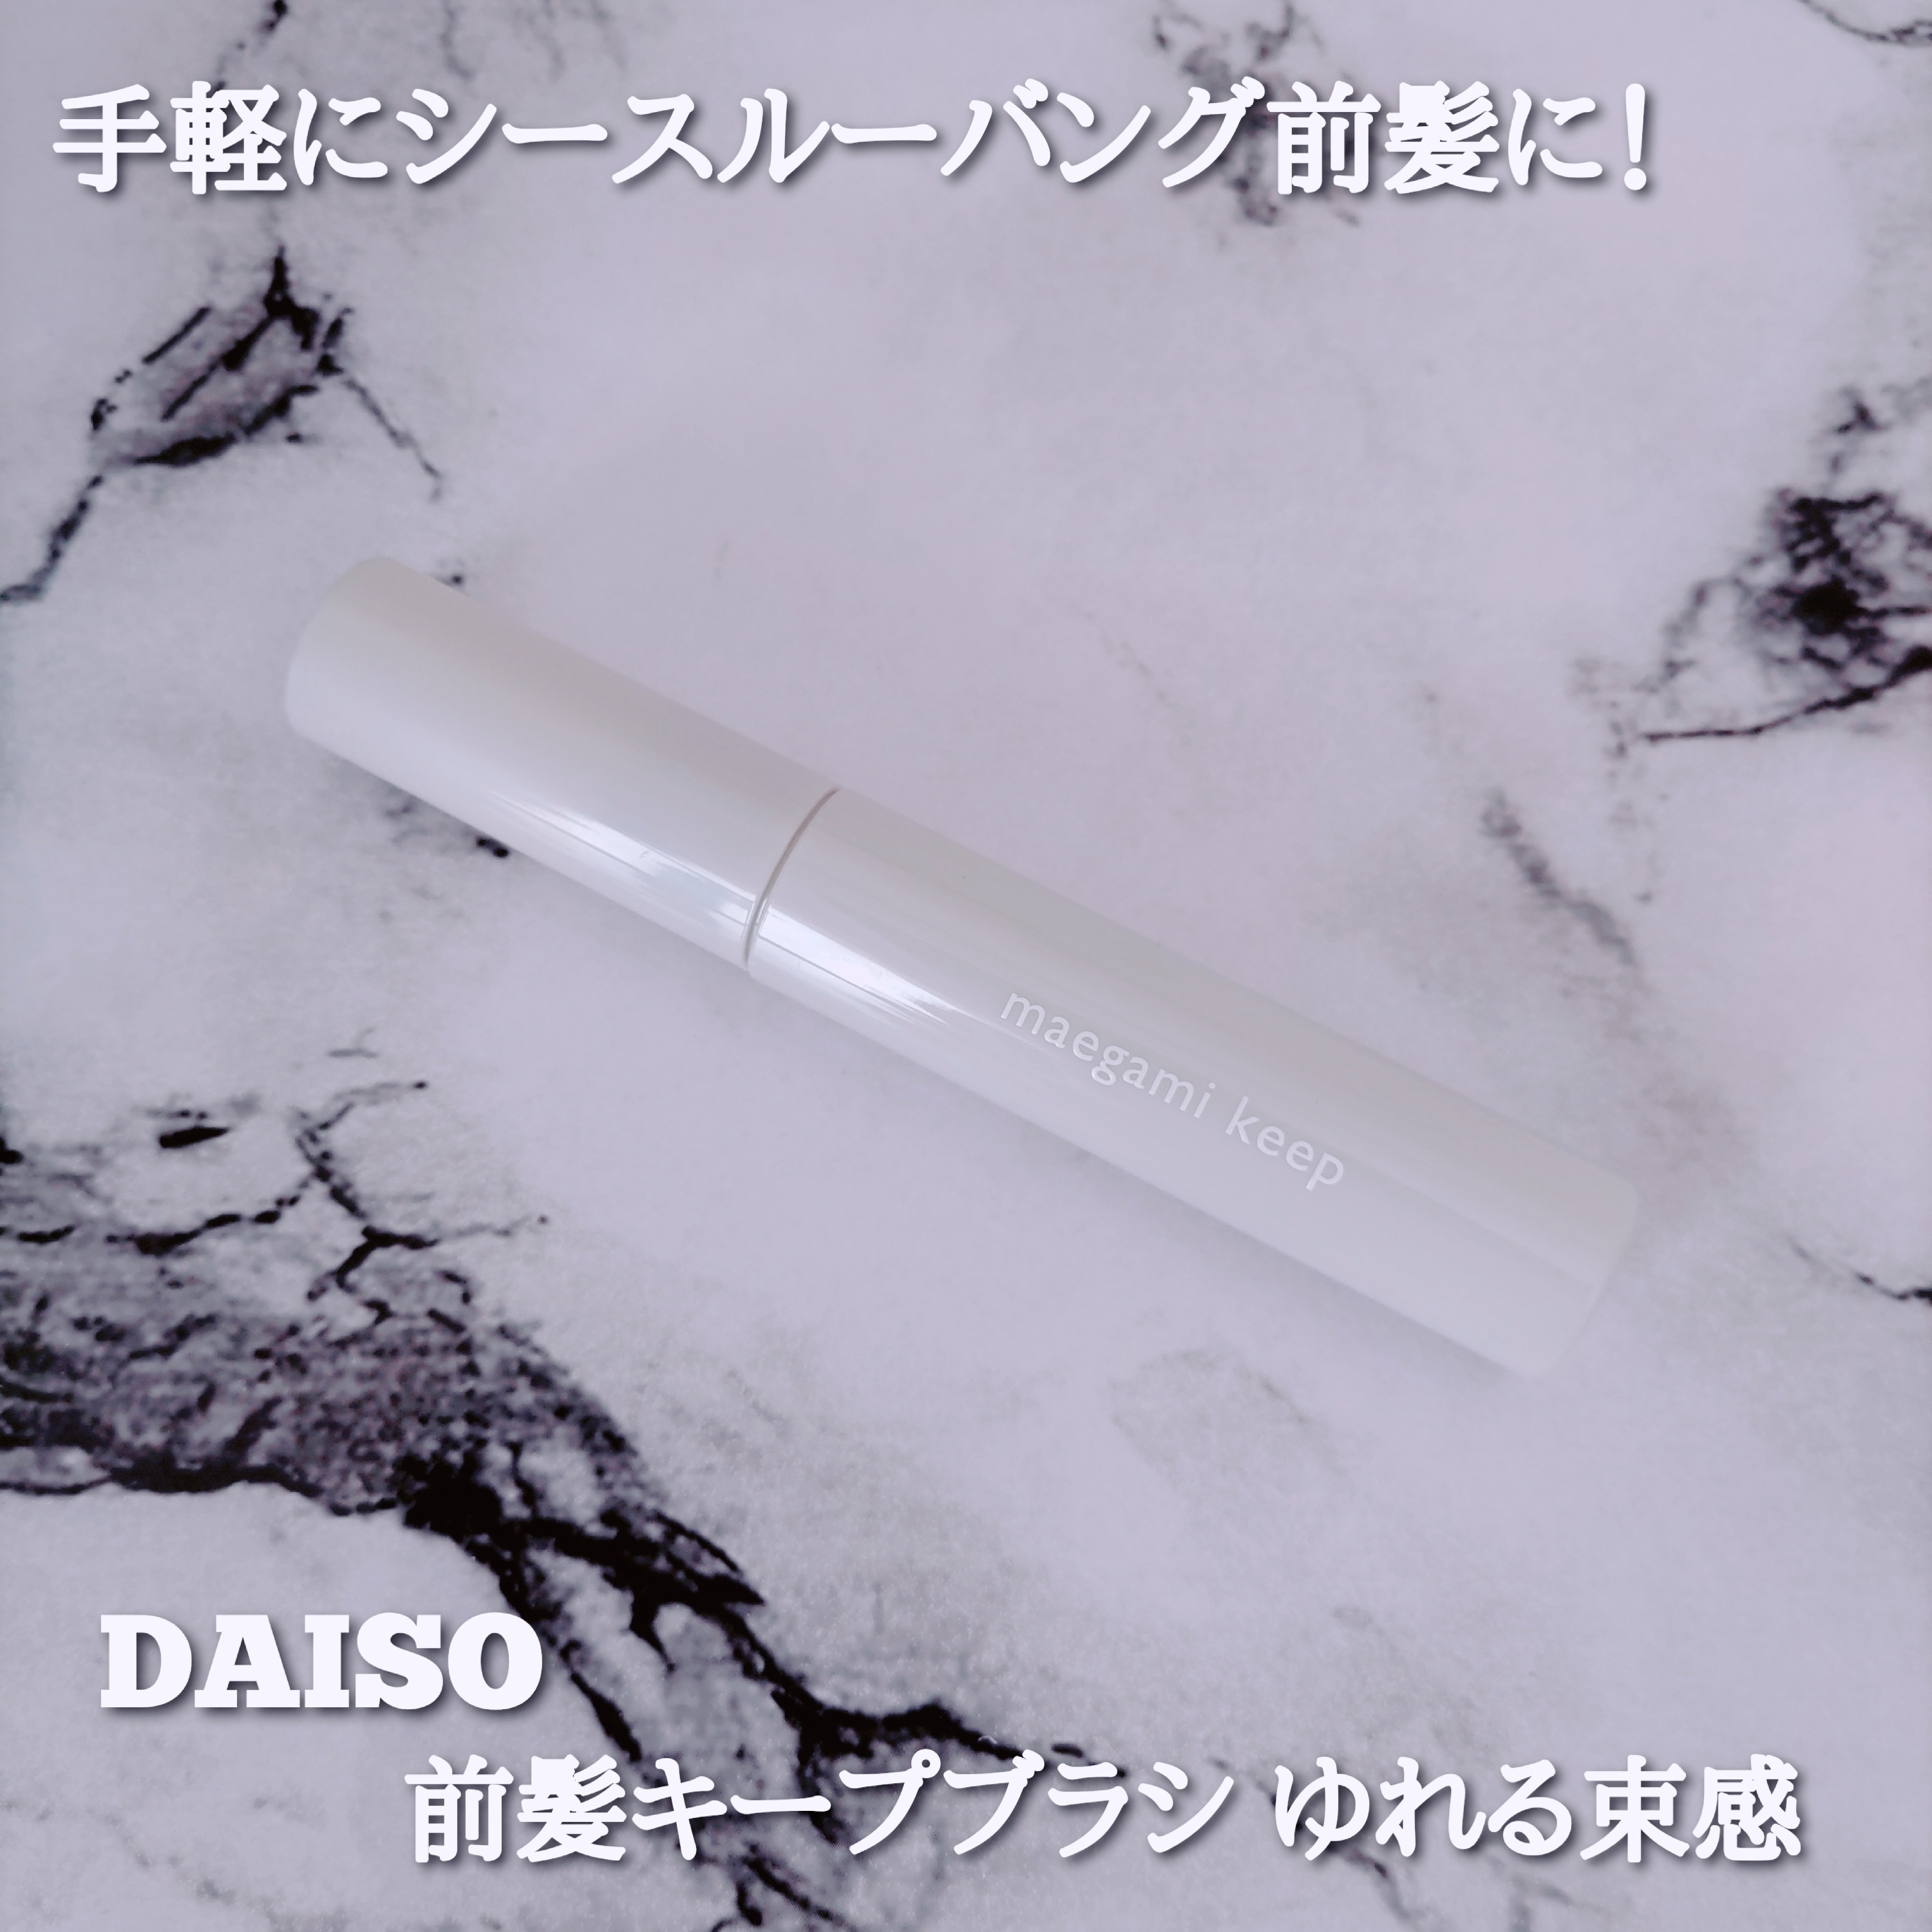 DAISO 前髪キープブラシ DAを使ったYuKaRi♡さんのクチコミ画像1